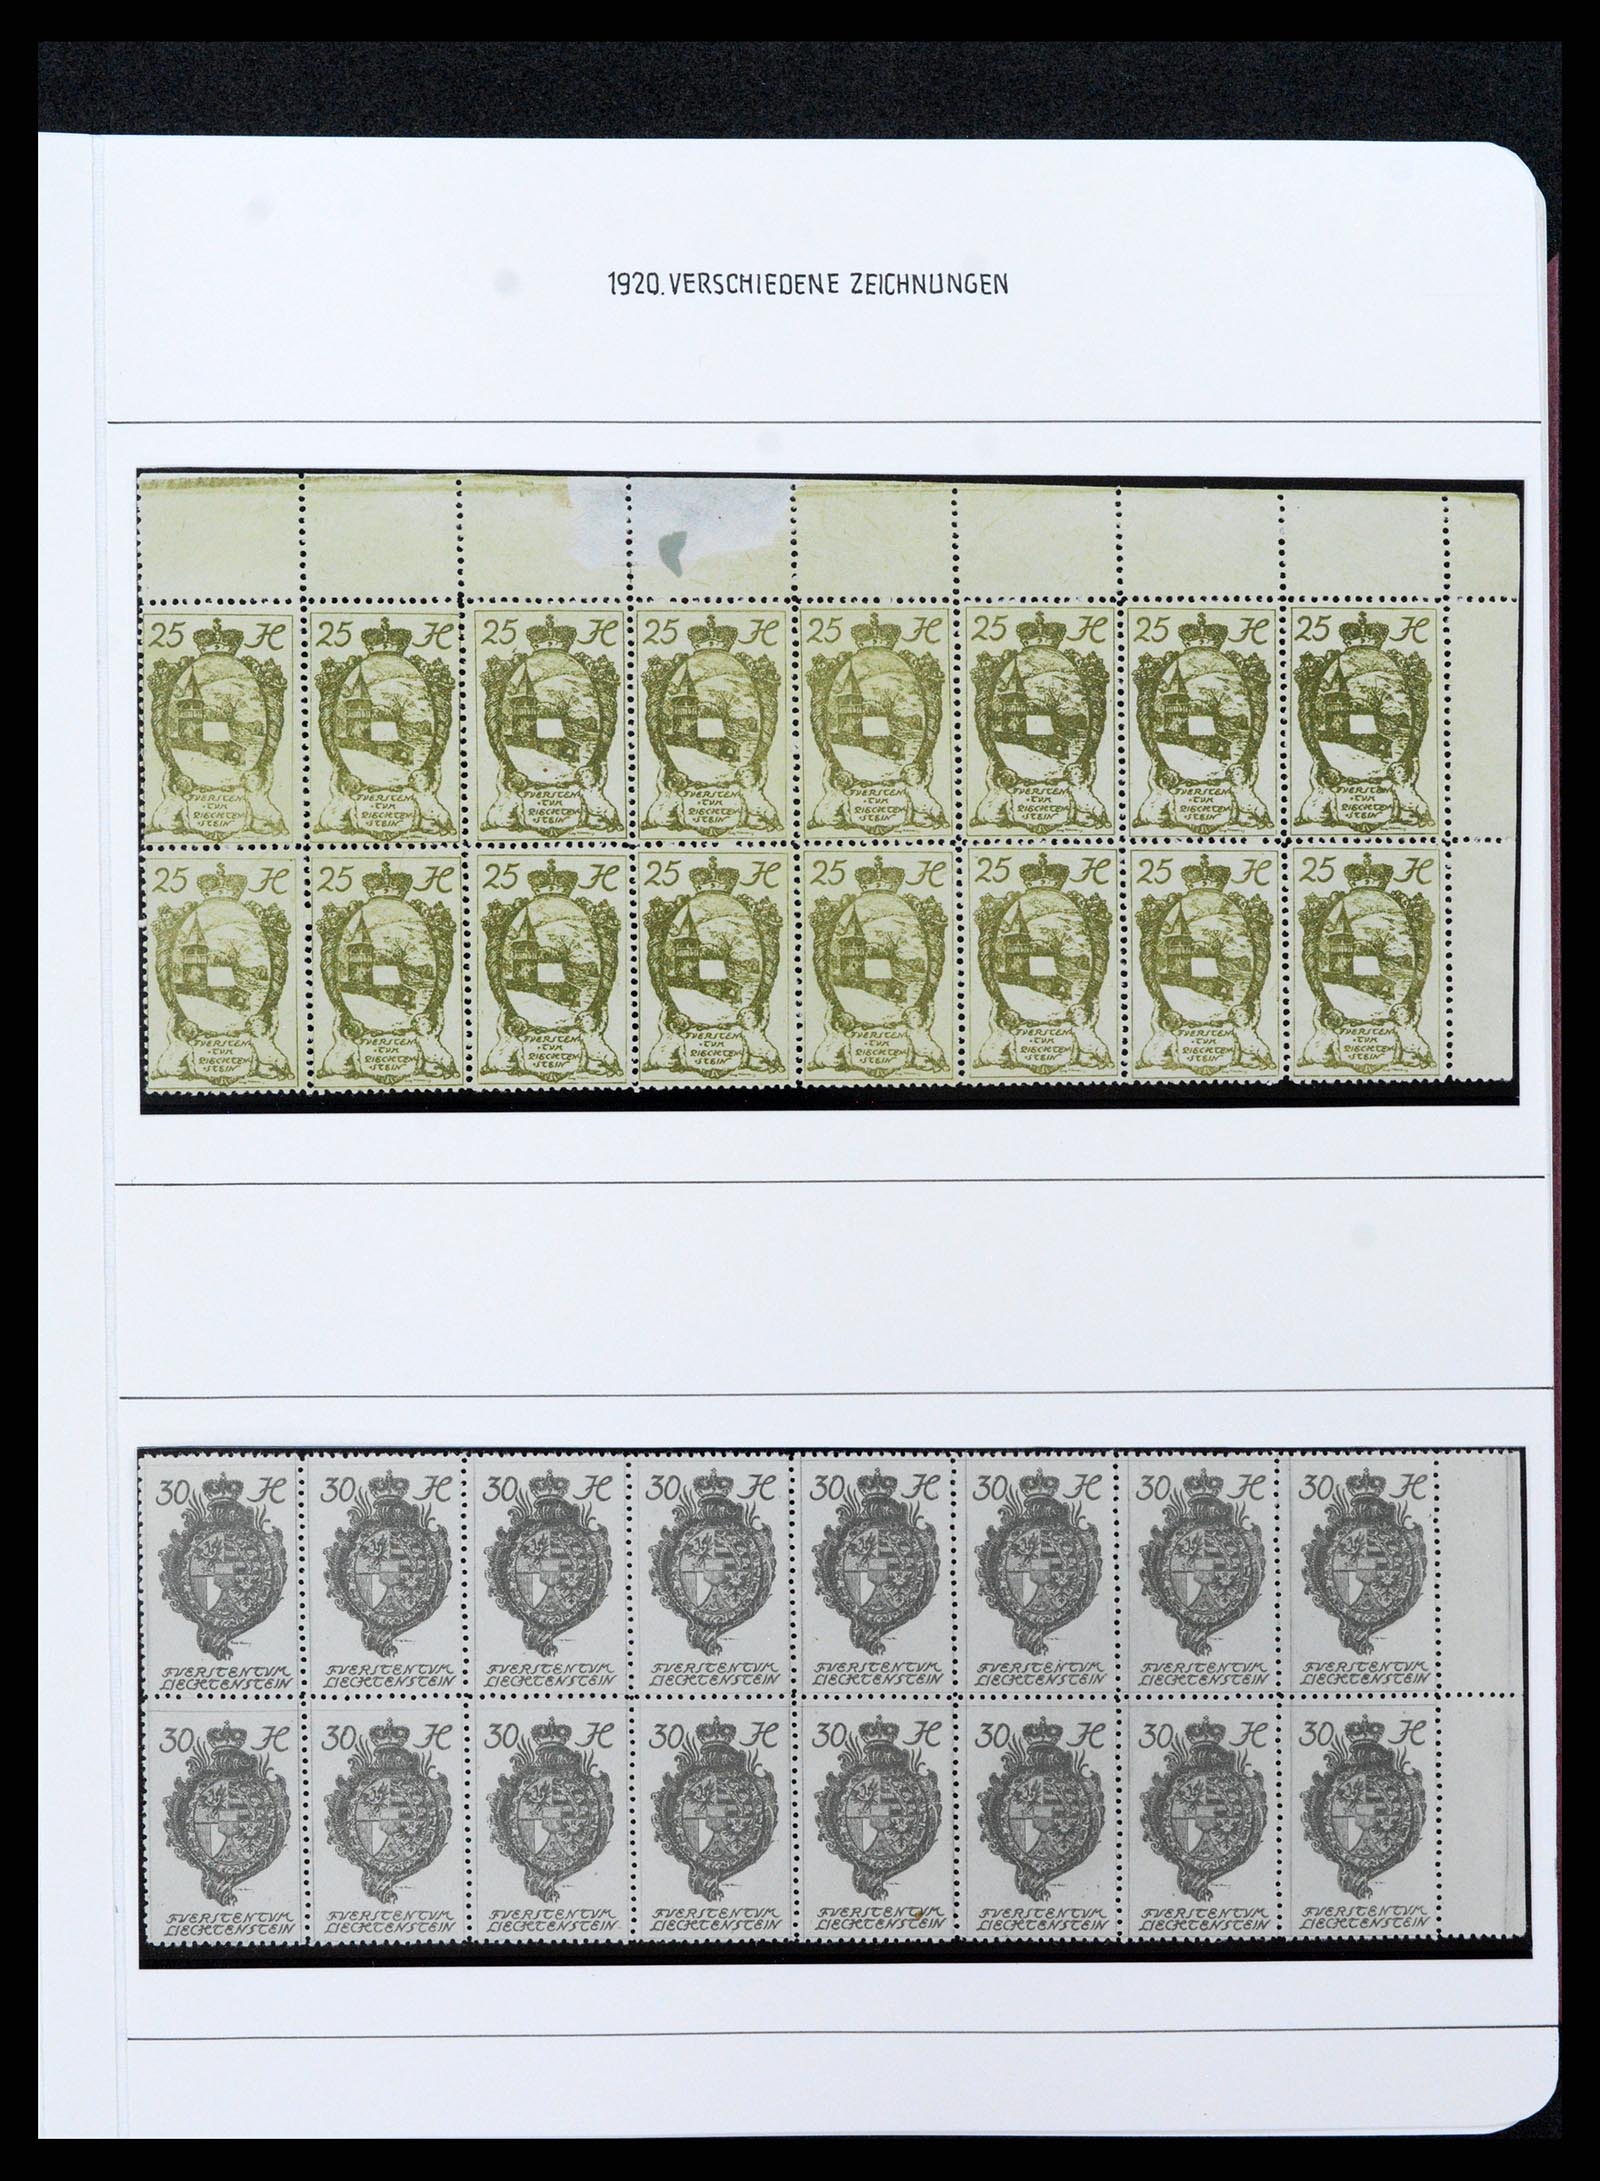 37150 0088 - Stamp collection 37150 Liechtenstein supercollection 1912-1962.